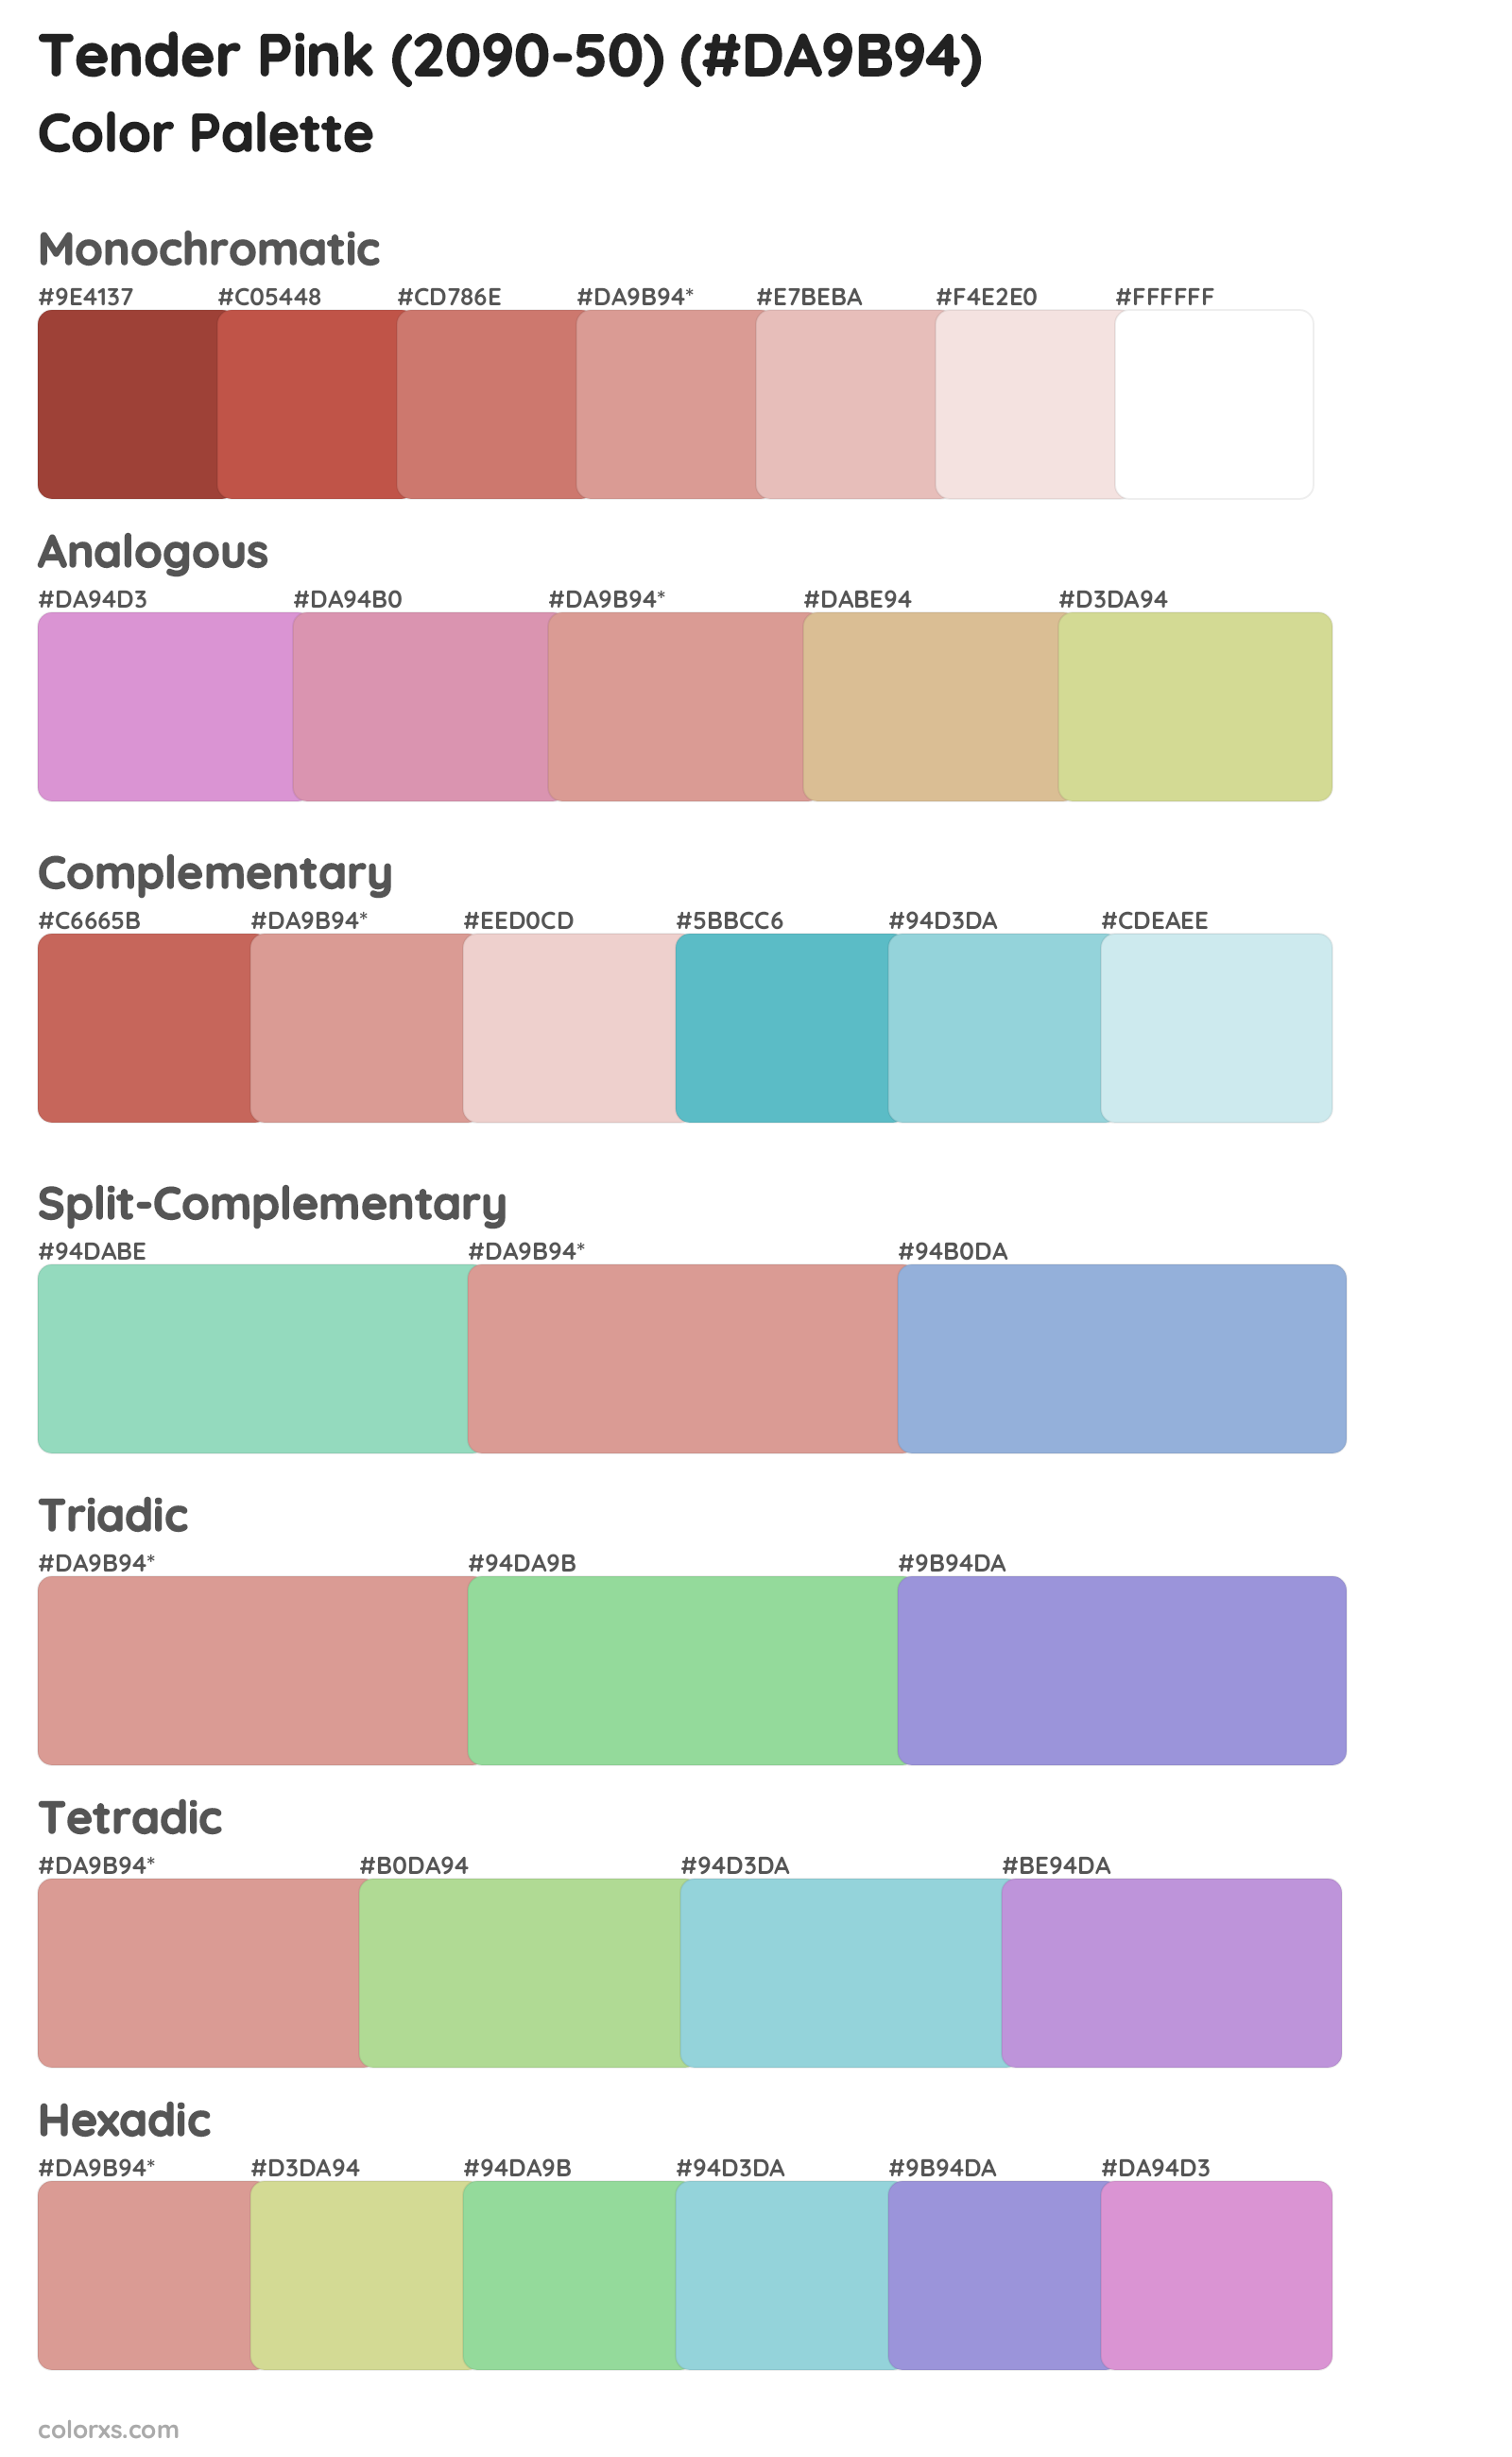 Tender Pink (2090-50) Color Scheme Palettes